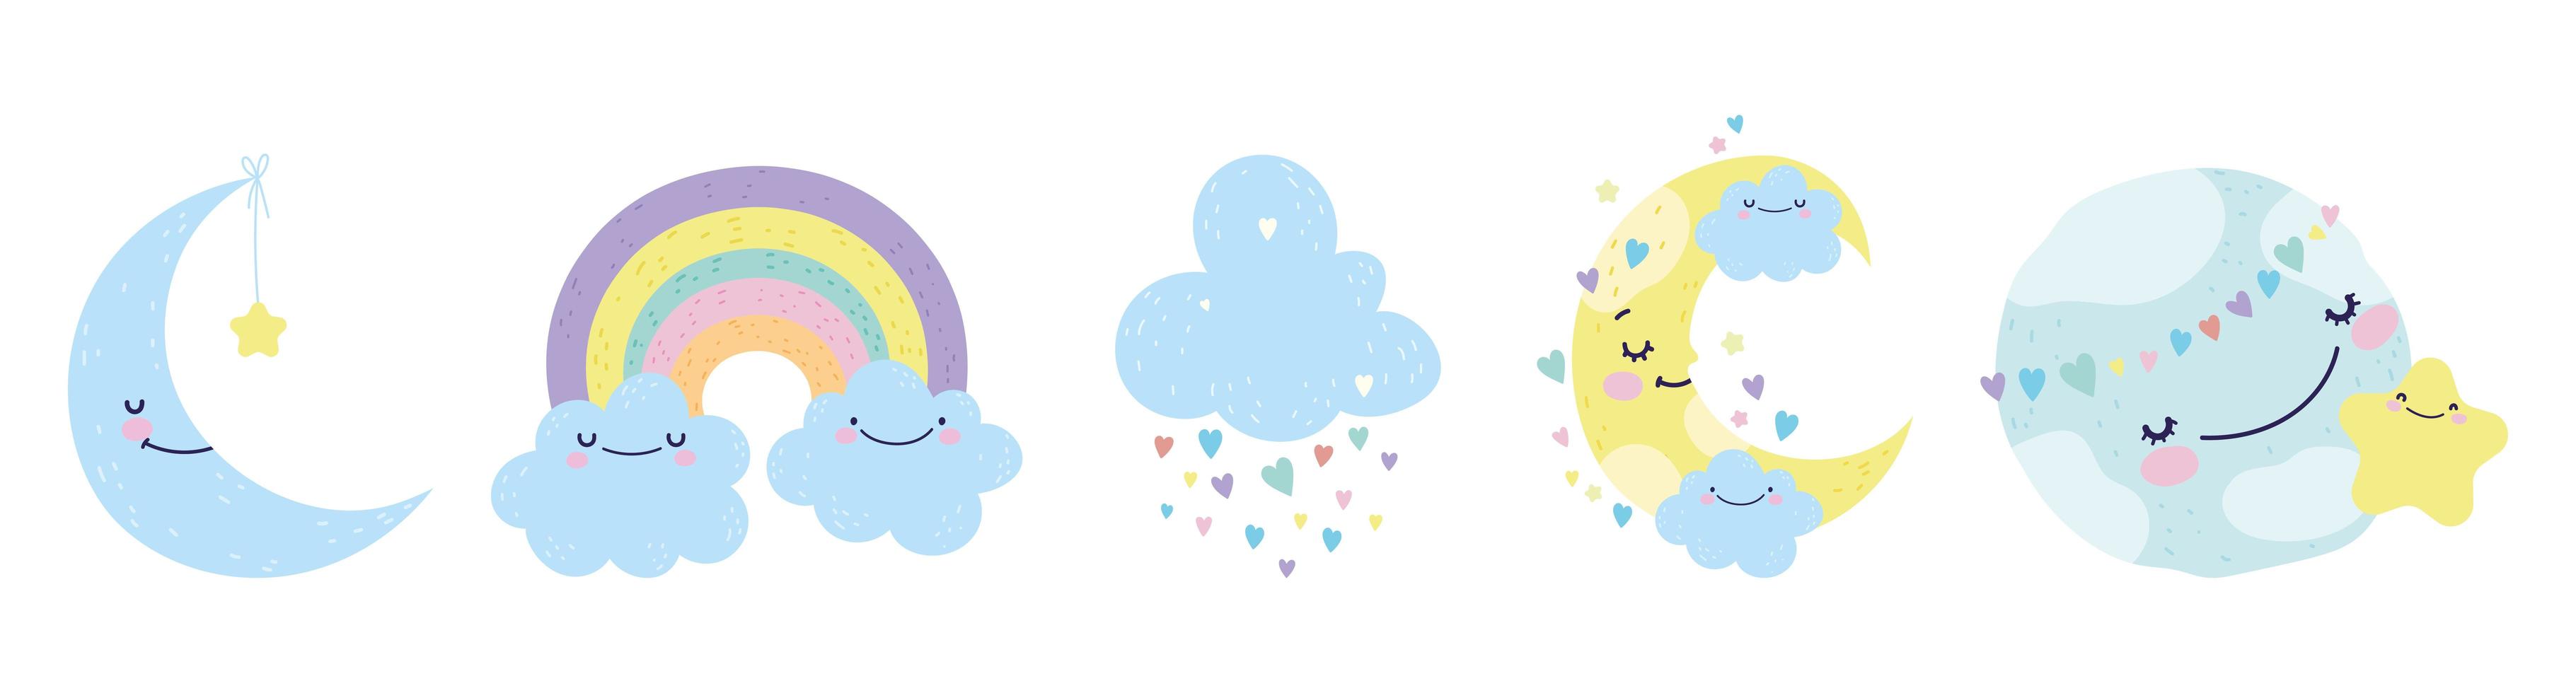 süße kleine Monde, Wolken und ein Regenbogen-Set vektor